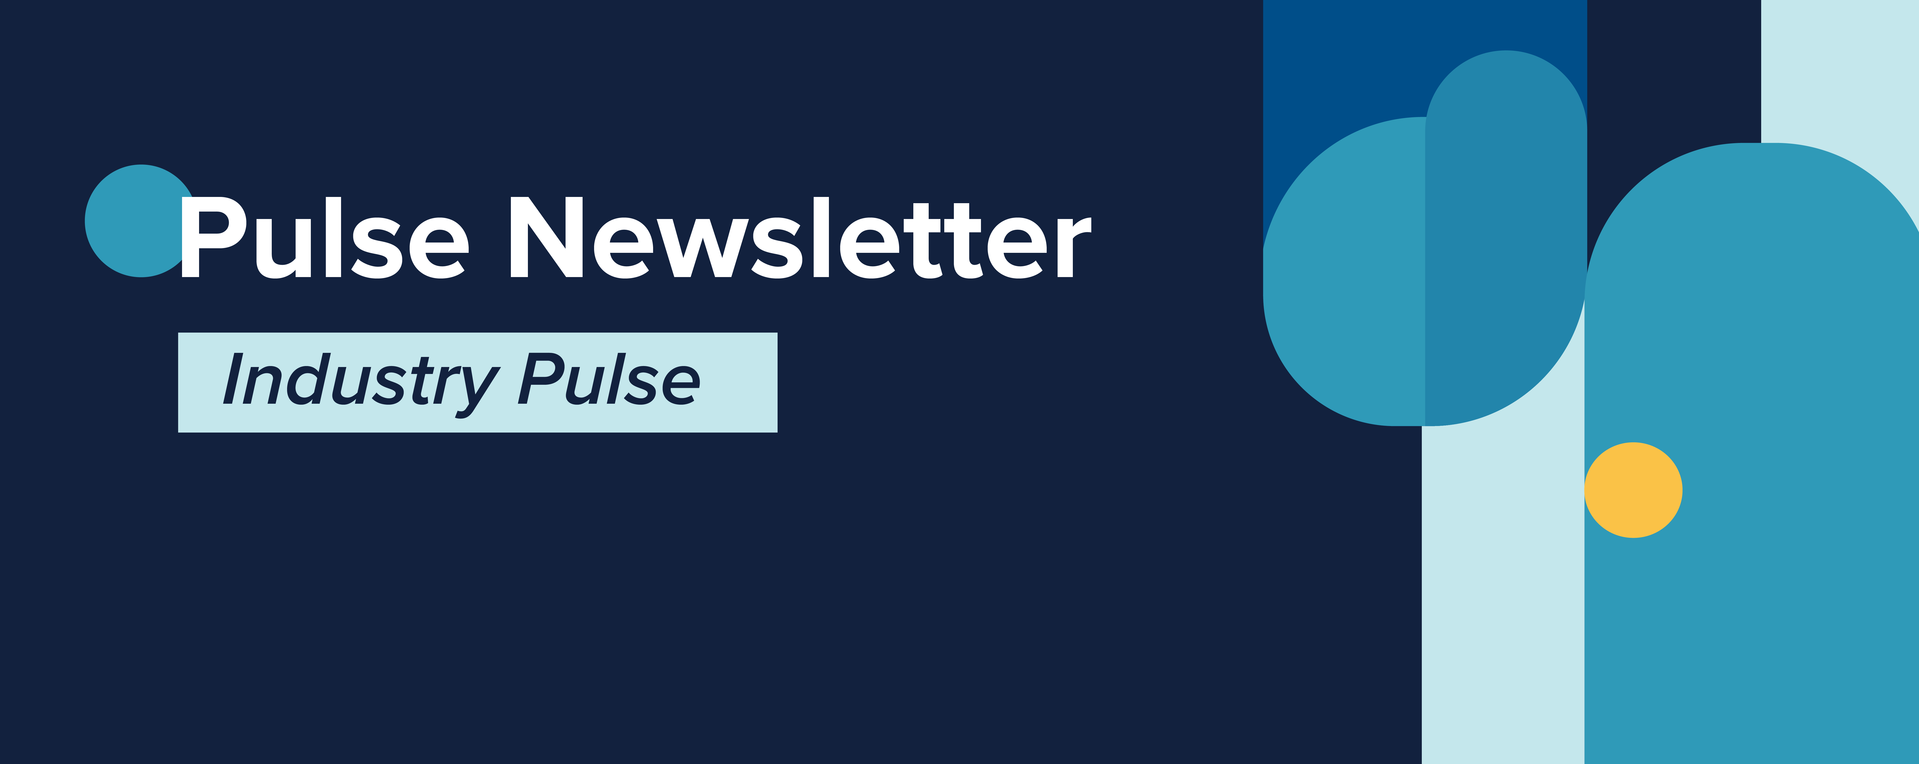 industry-pulse-newsletter-banner